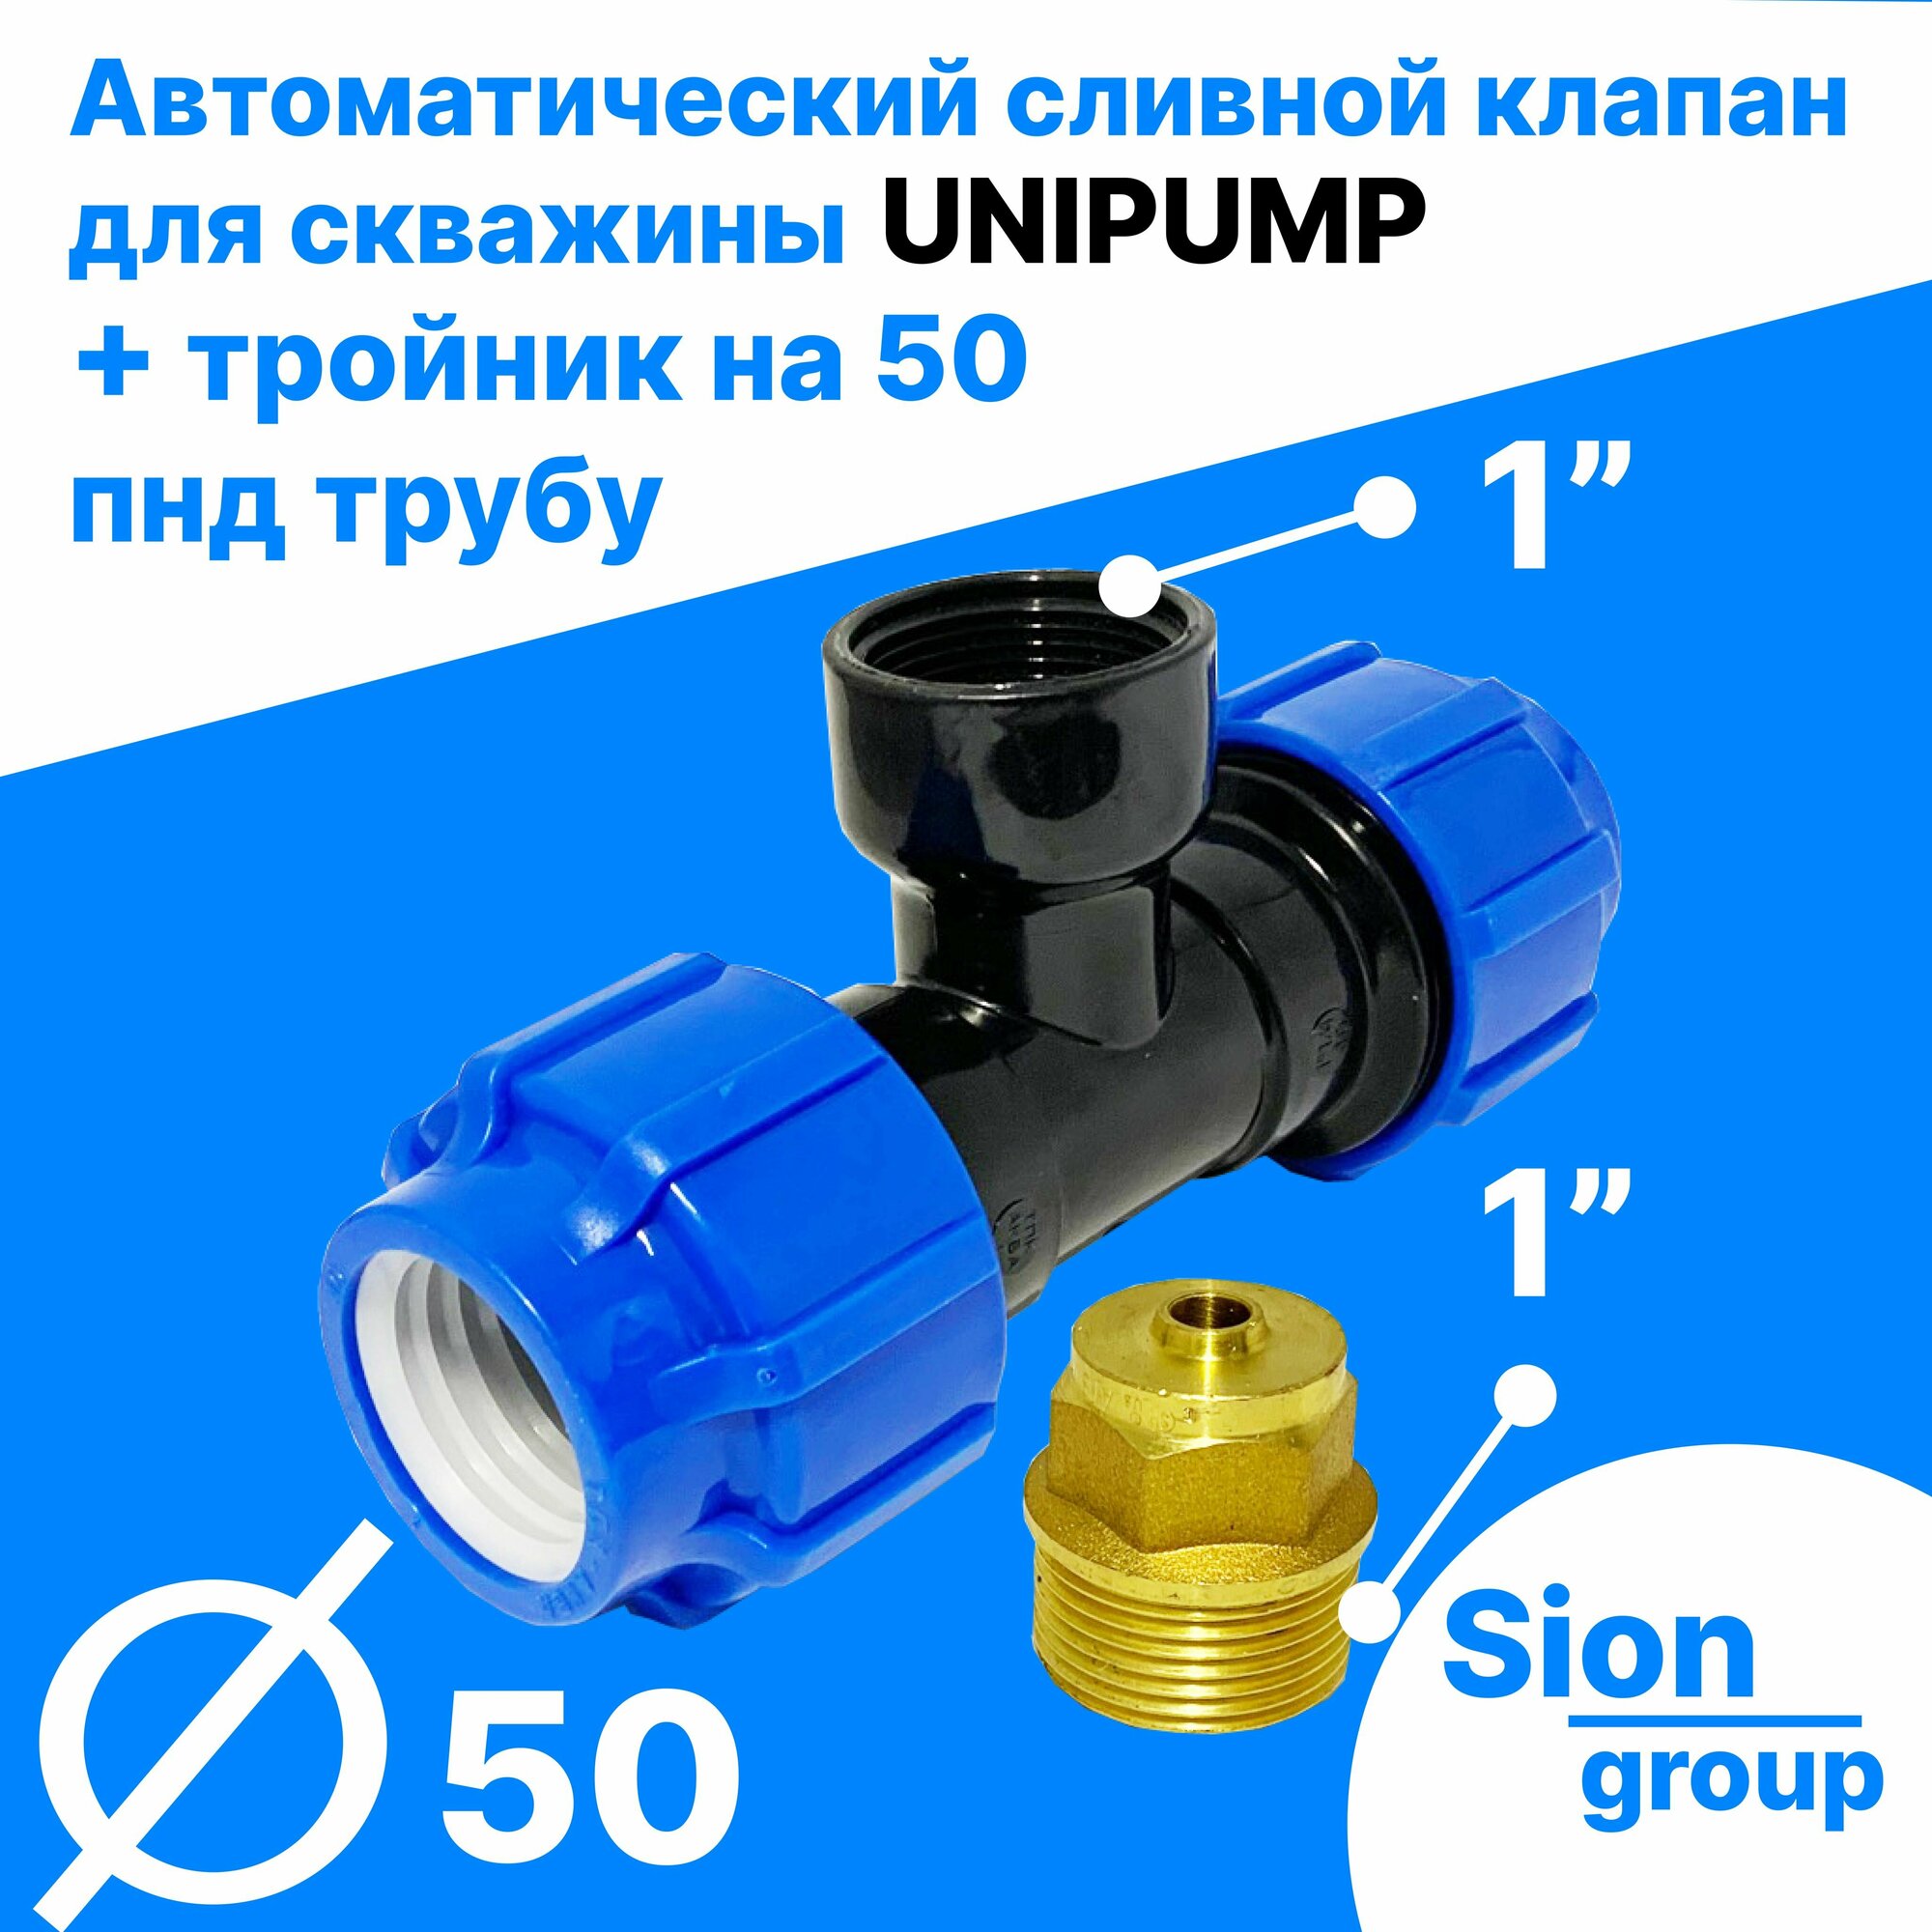 Автоматический сливной клапан для скважины - 1" (+ тройник на 50 пнд трубу) - UNIPUMP